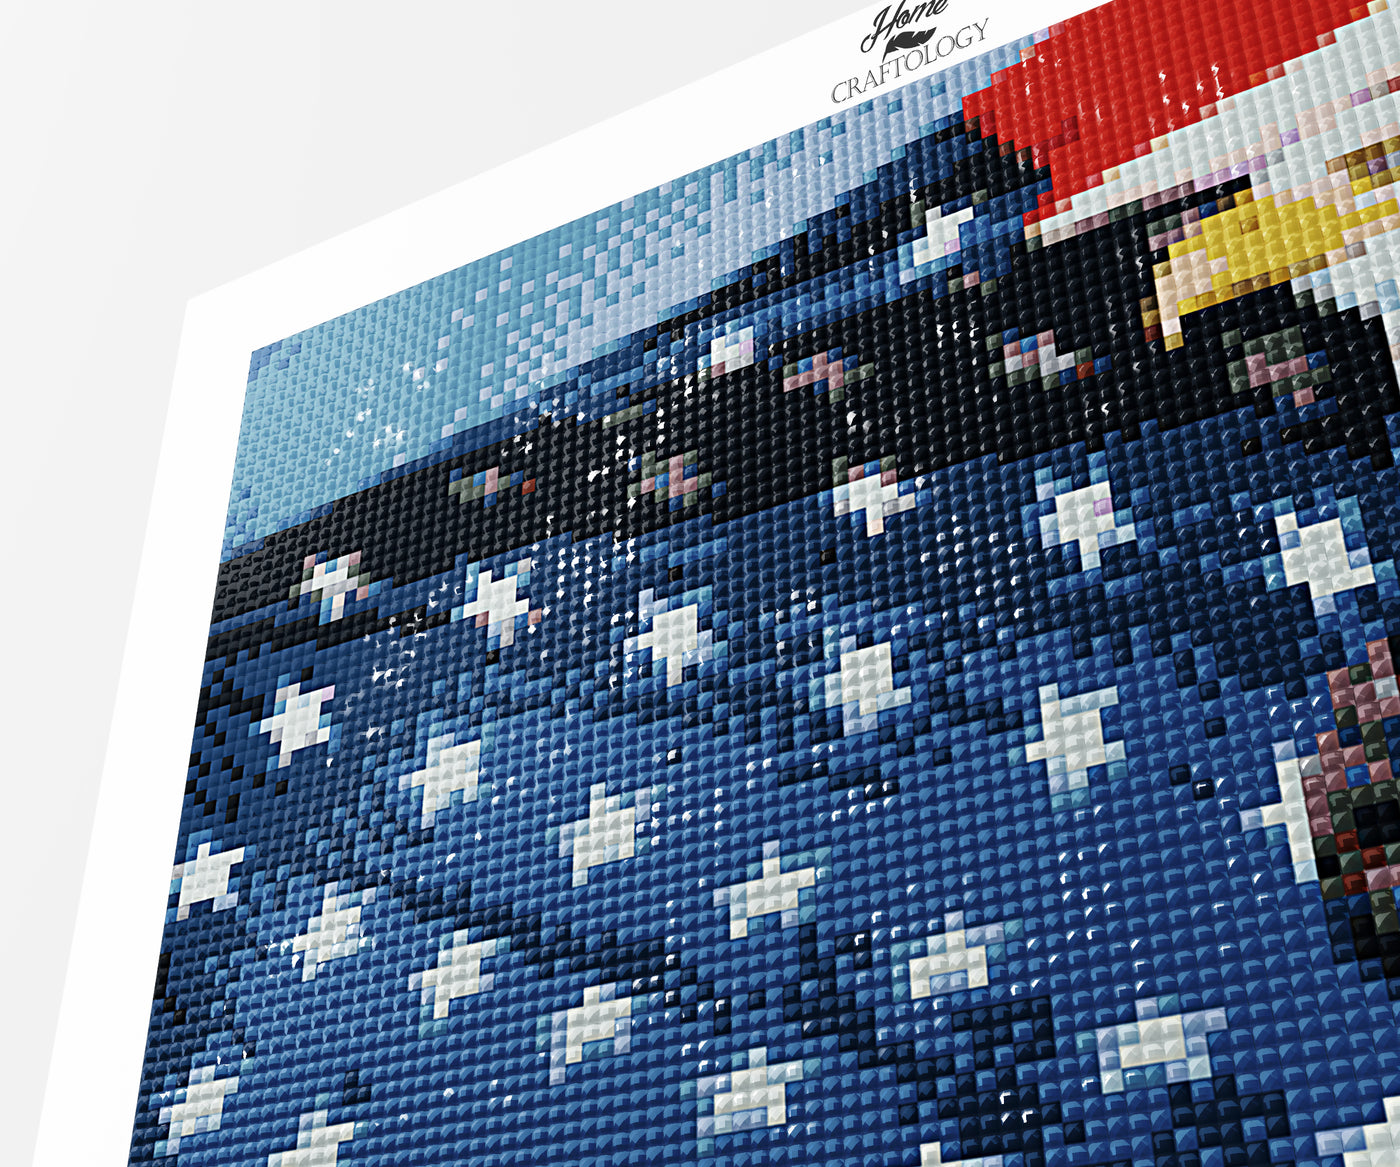 USA Flag with Bald Eagle - Premium Diamond Painting Kit